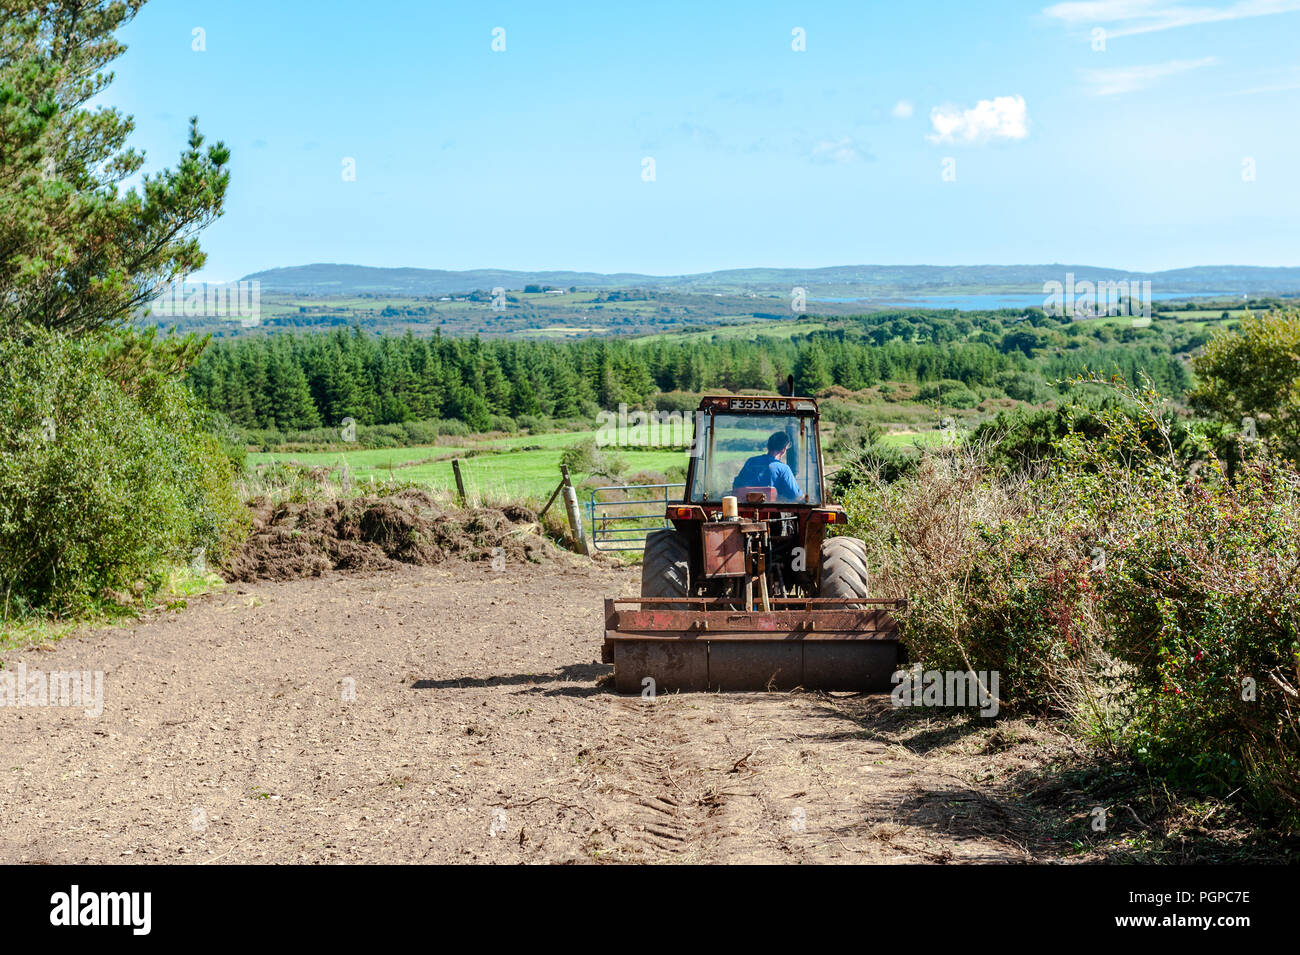 Rouleaux d'agriculteurs après la plantation des semences d'herbe au sol lors d'une journée ensoleillée à Ballydehob, West Cork, Irlande avec copie espace. Banque D'Images